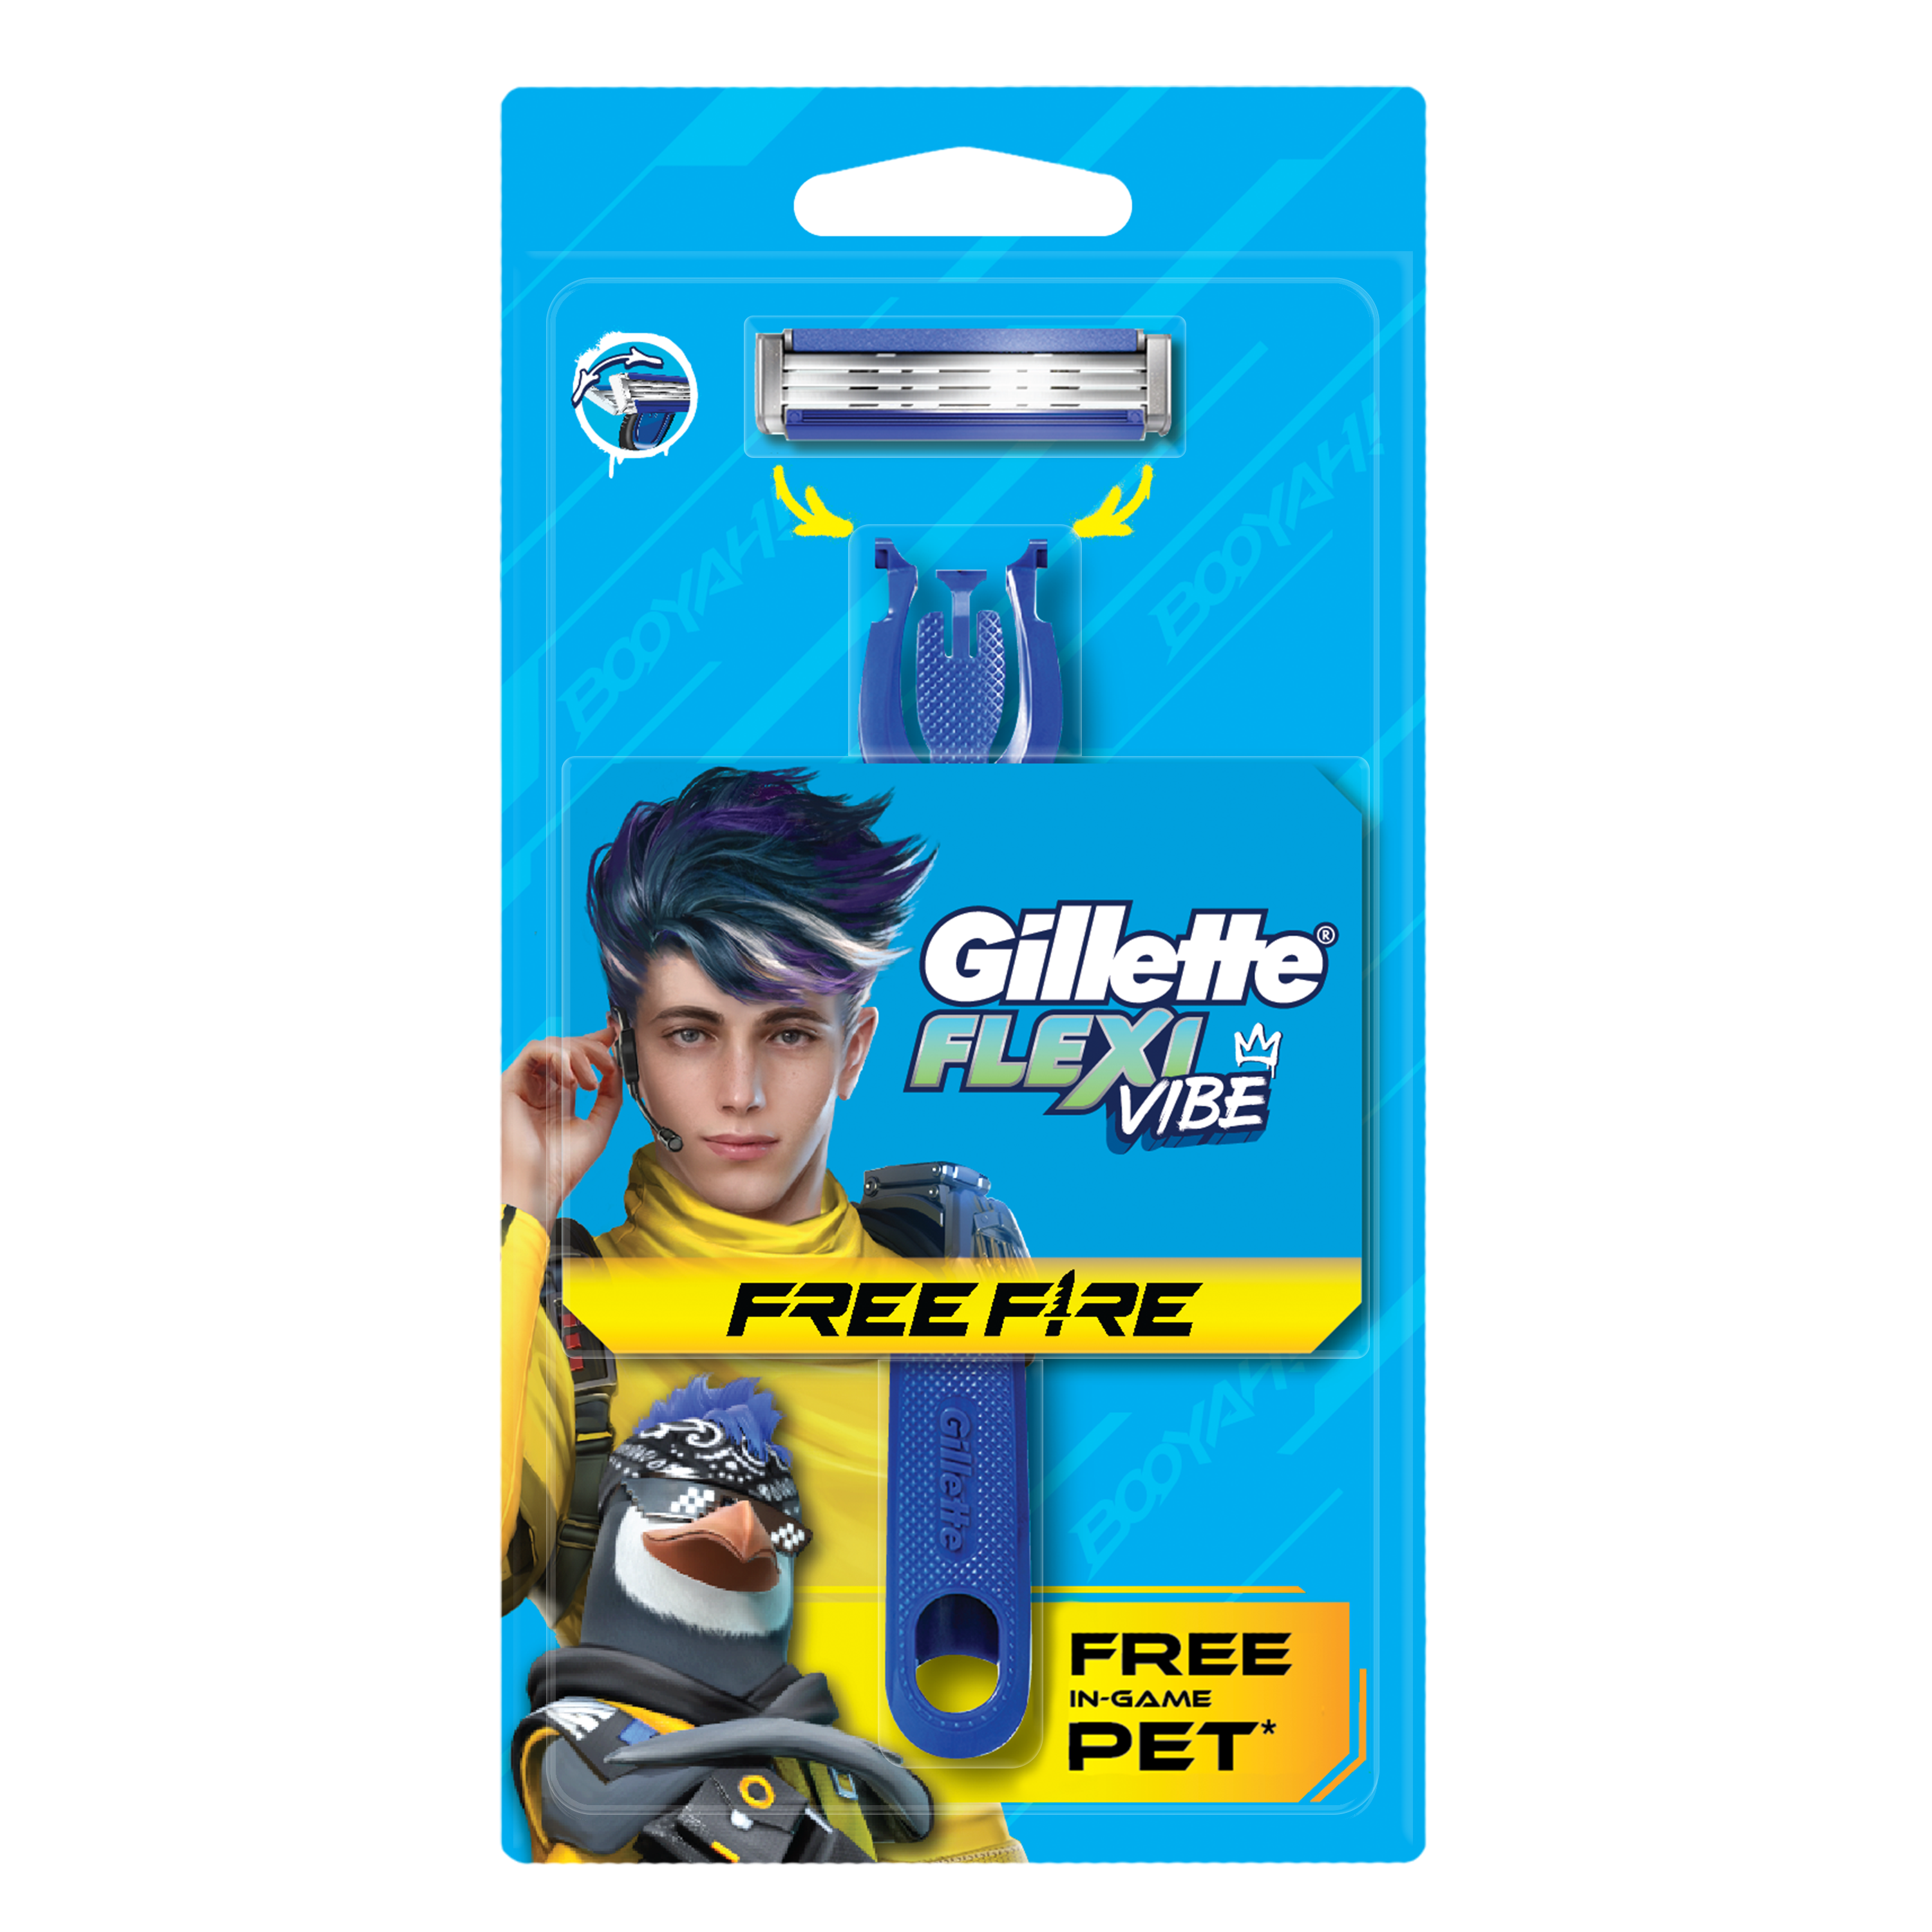 Gillette ra mắt dao cạo phiên bản Free Fire – Khuôn mặt tự tin sẵn sàng chiến đấu - Ảnh 1.